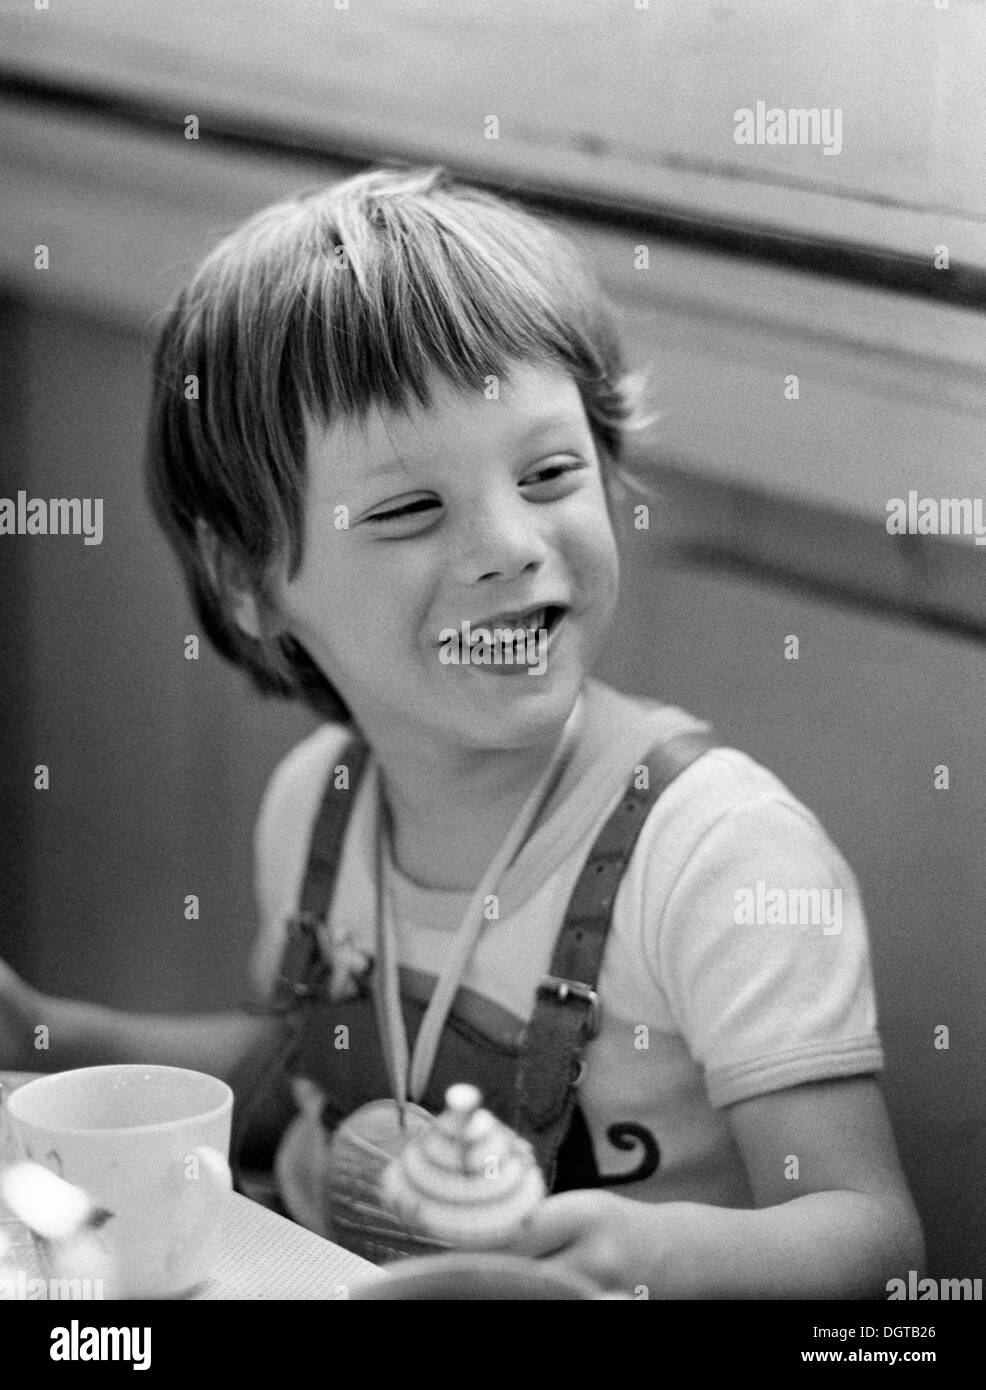 Cinque-anno-vecchio ragazzo, ritratto, Leipzig, Germania orientale, storico ancora intorno 1976 Foto Stock